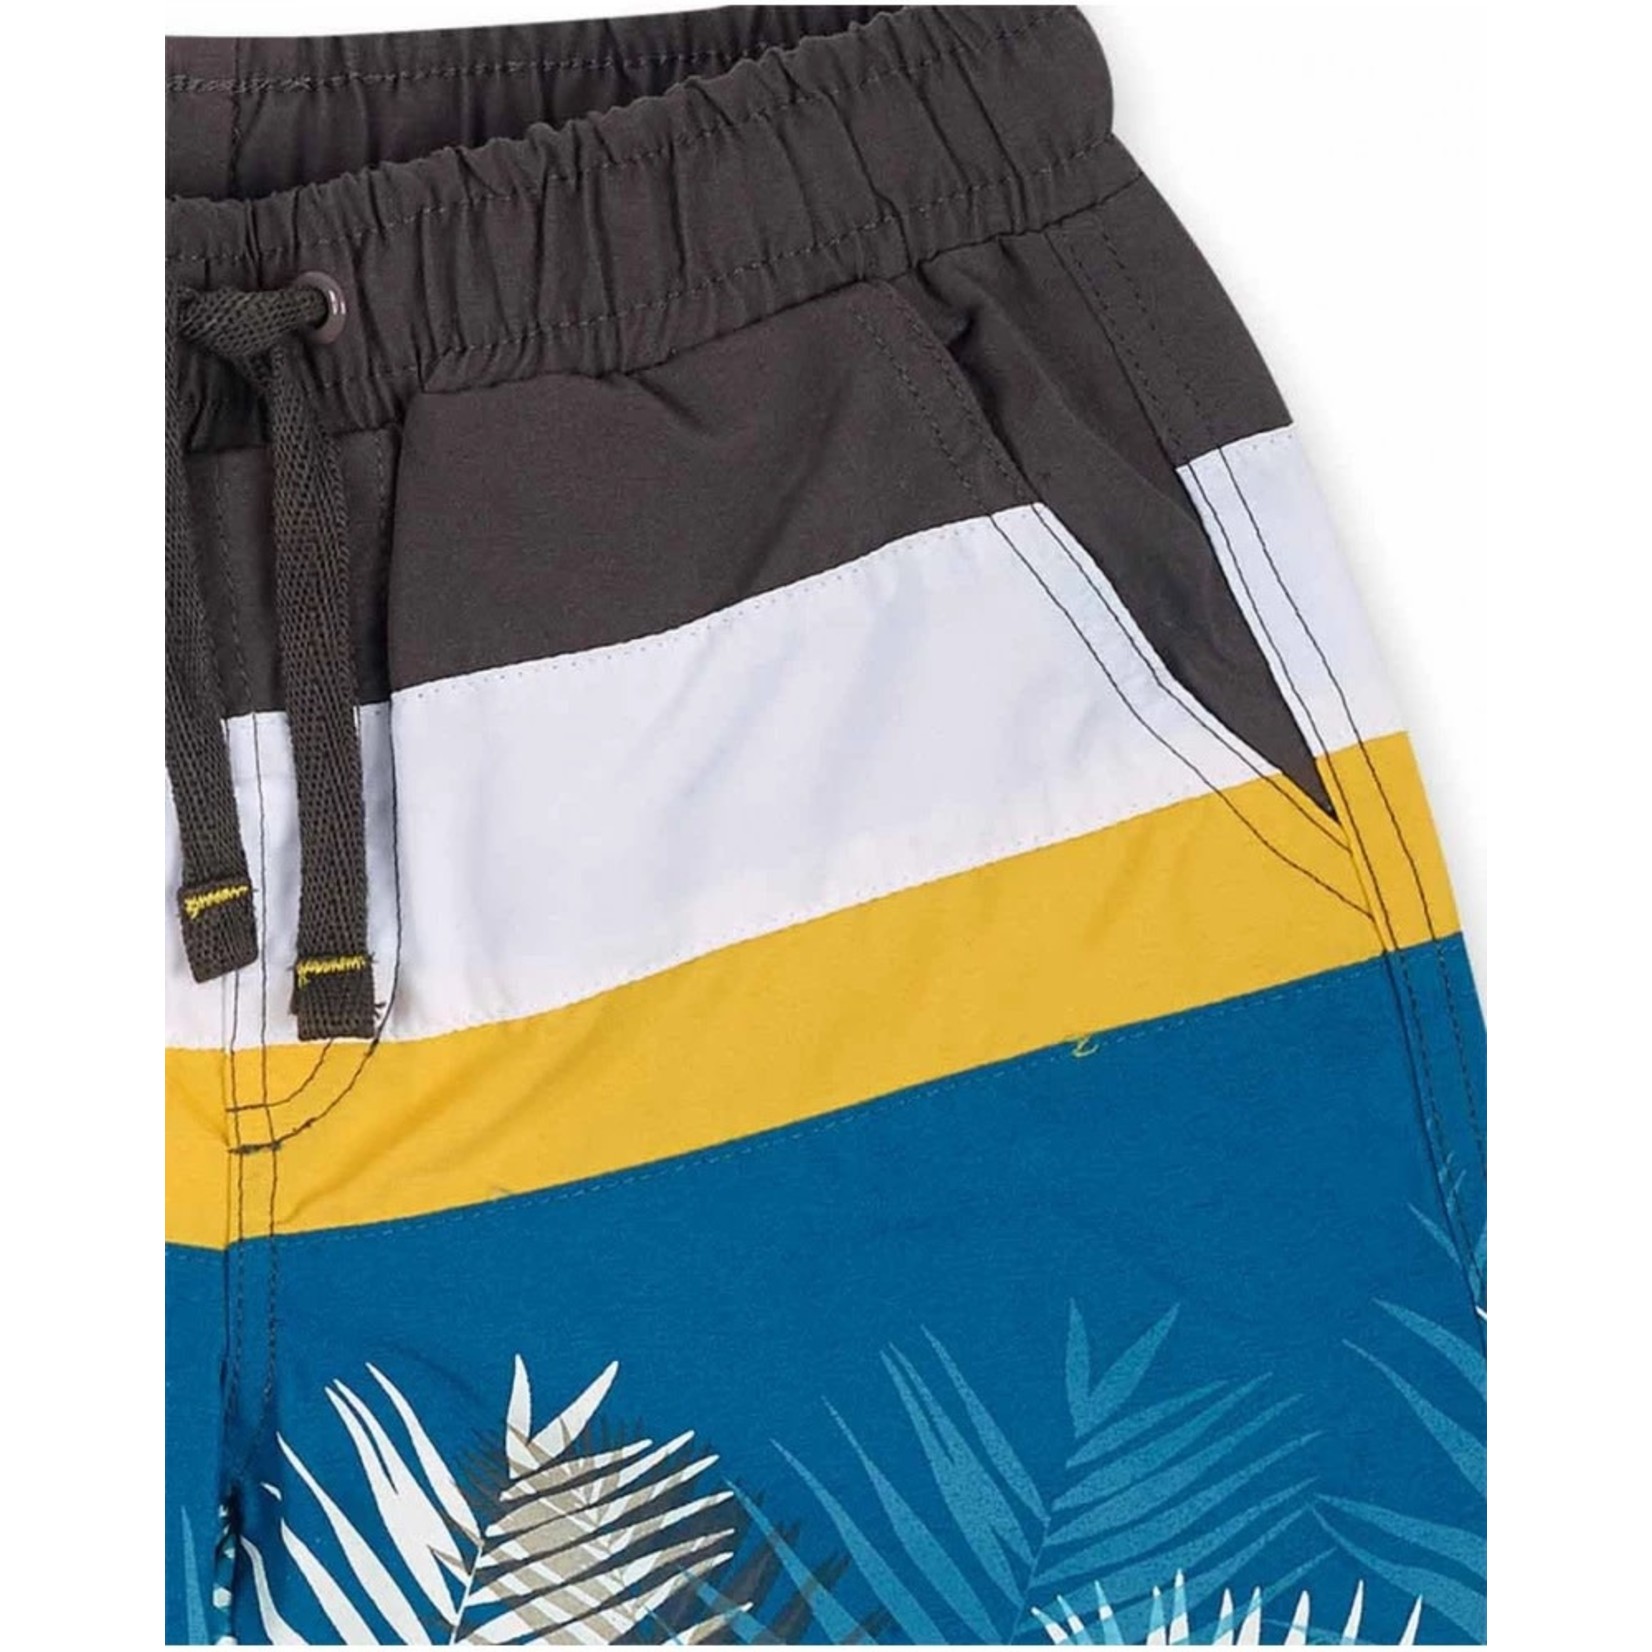 TucTuc TUC TUC - Short maillot à bandes colorées et imprimé de feuillage 'Lost Paradise'